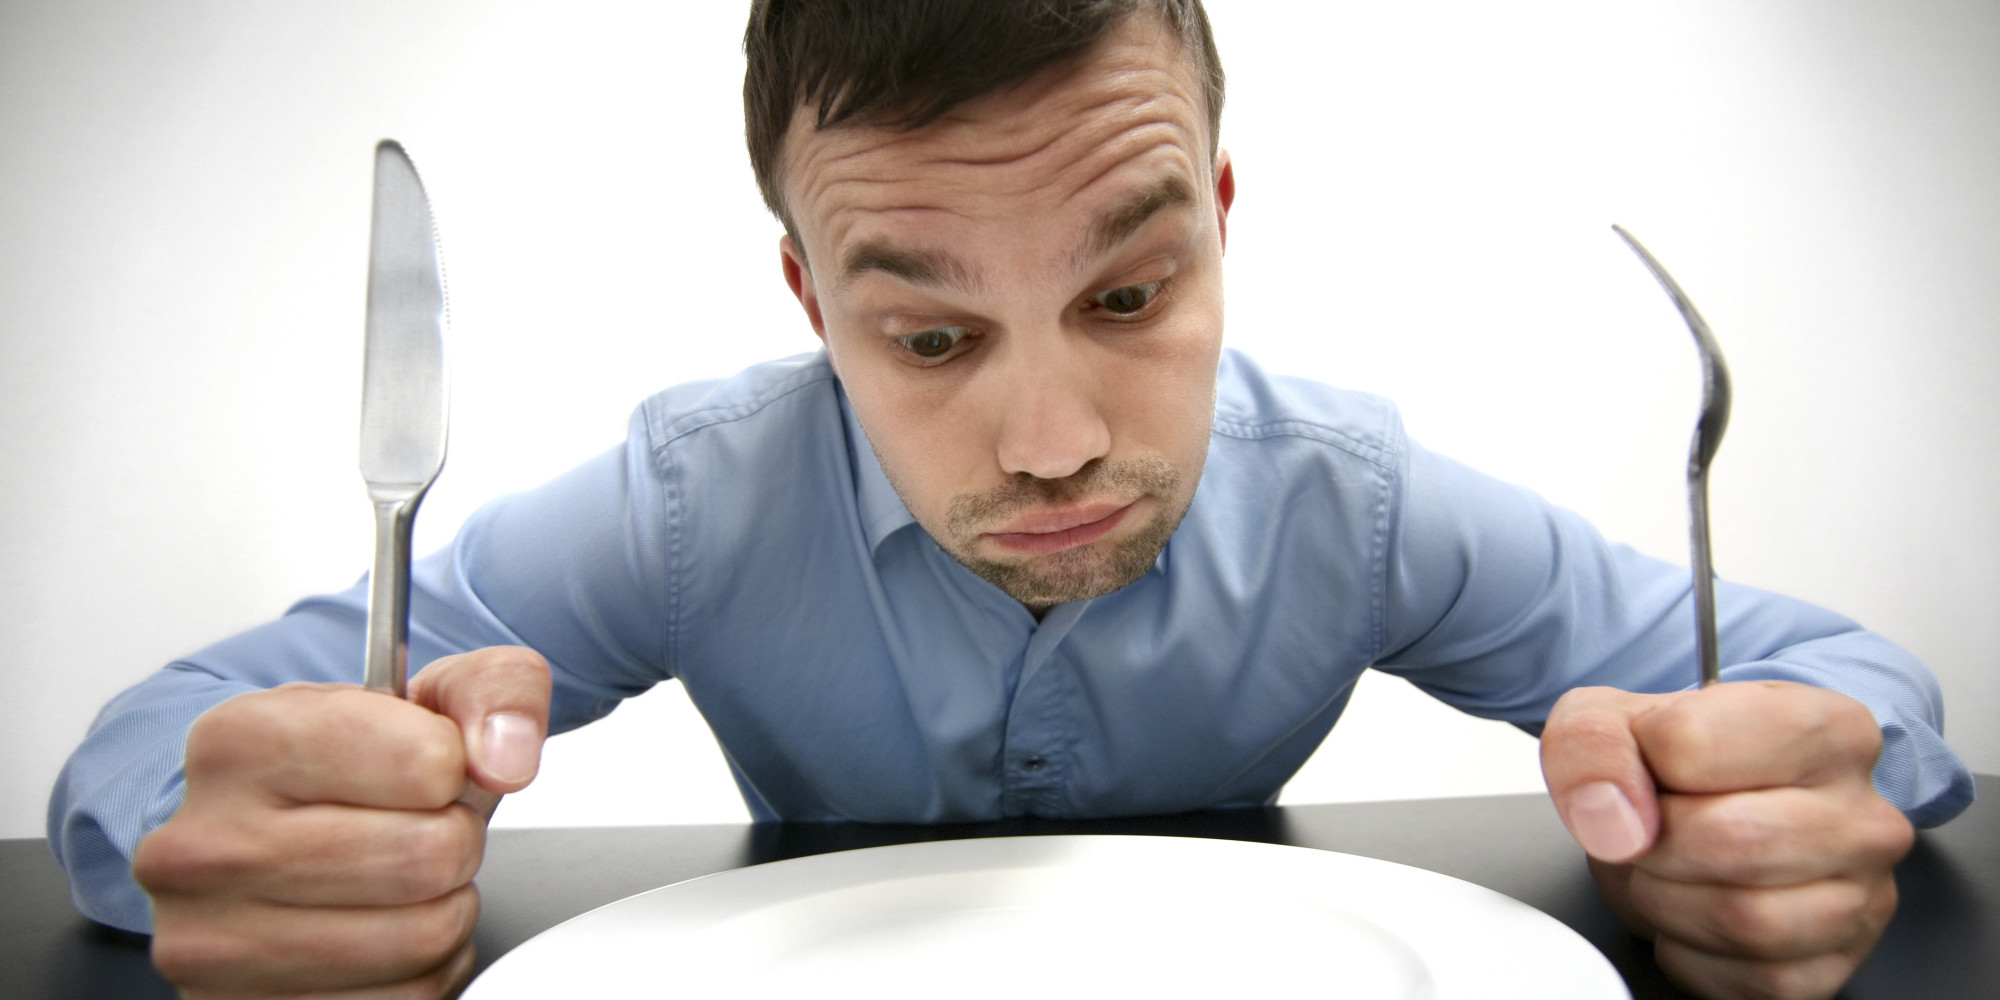 Cuồng ăn” chứng bệnh khiến người bệnh tiểu đường luôn cảm thấy đói 1